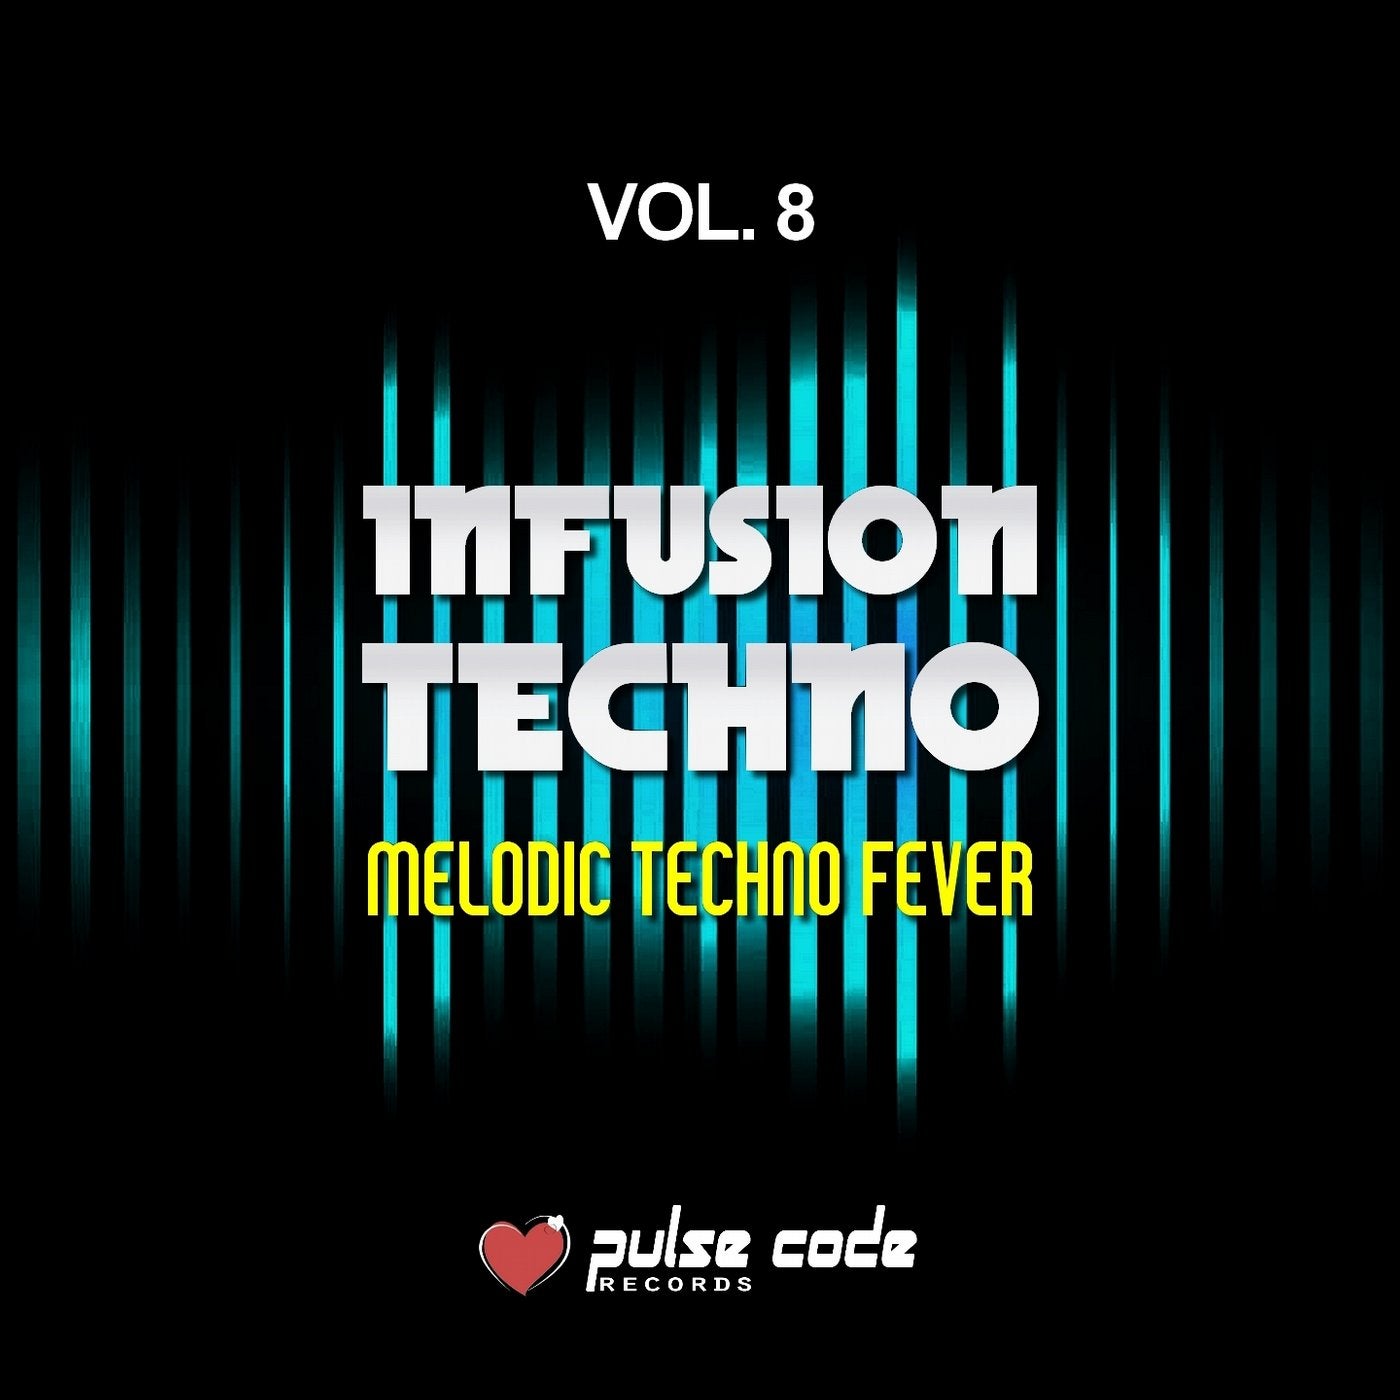 Infusion Techno, Vol. 8 (Melodic Techno Fever)